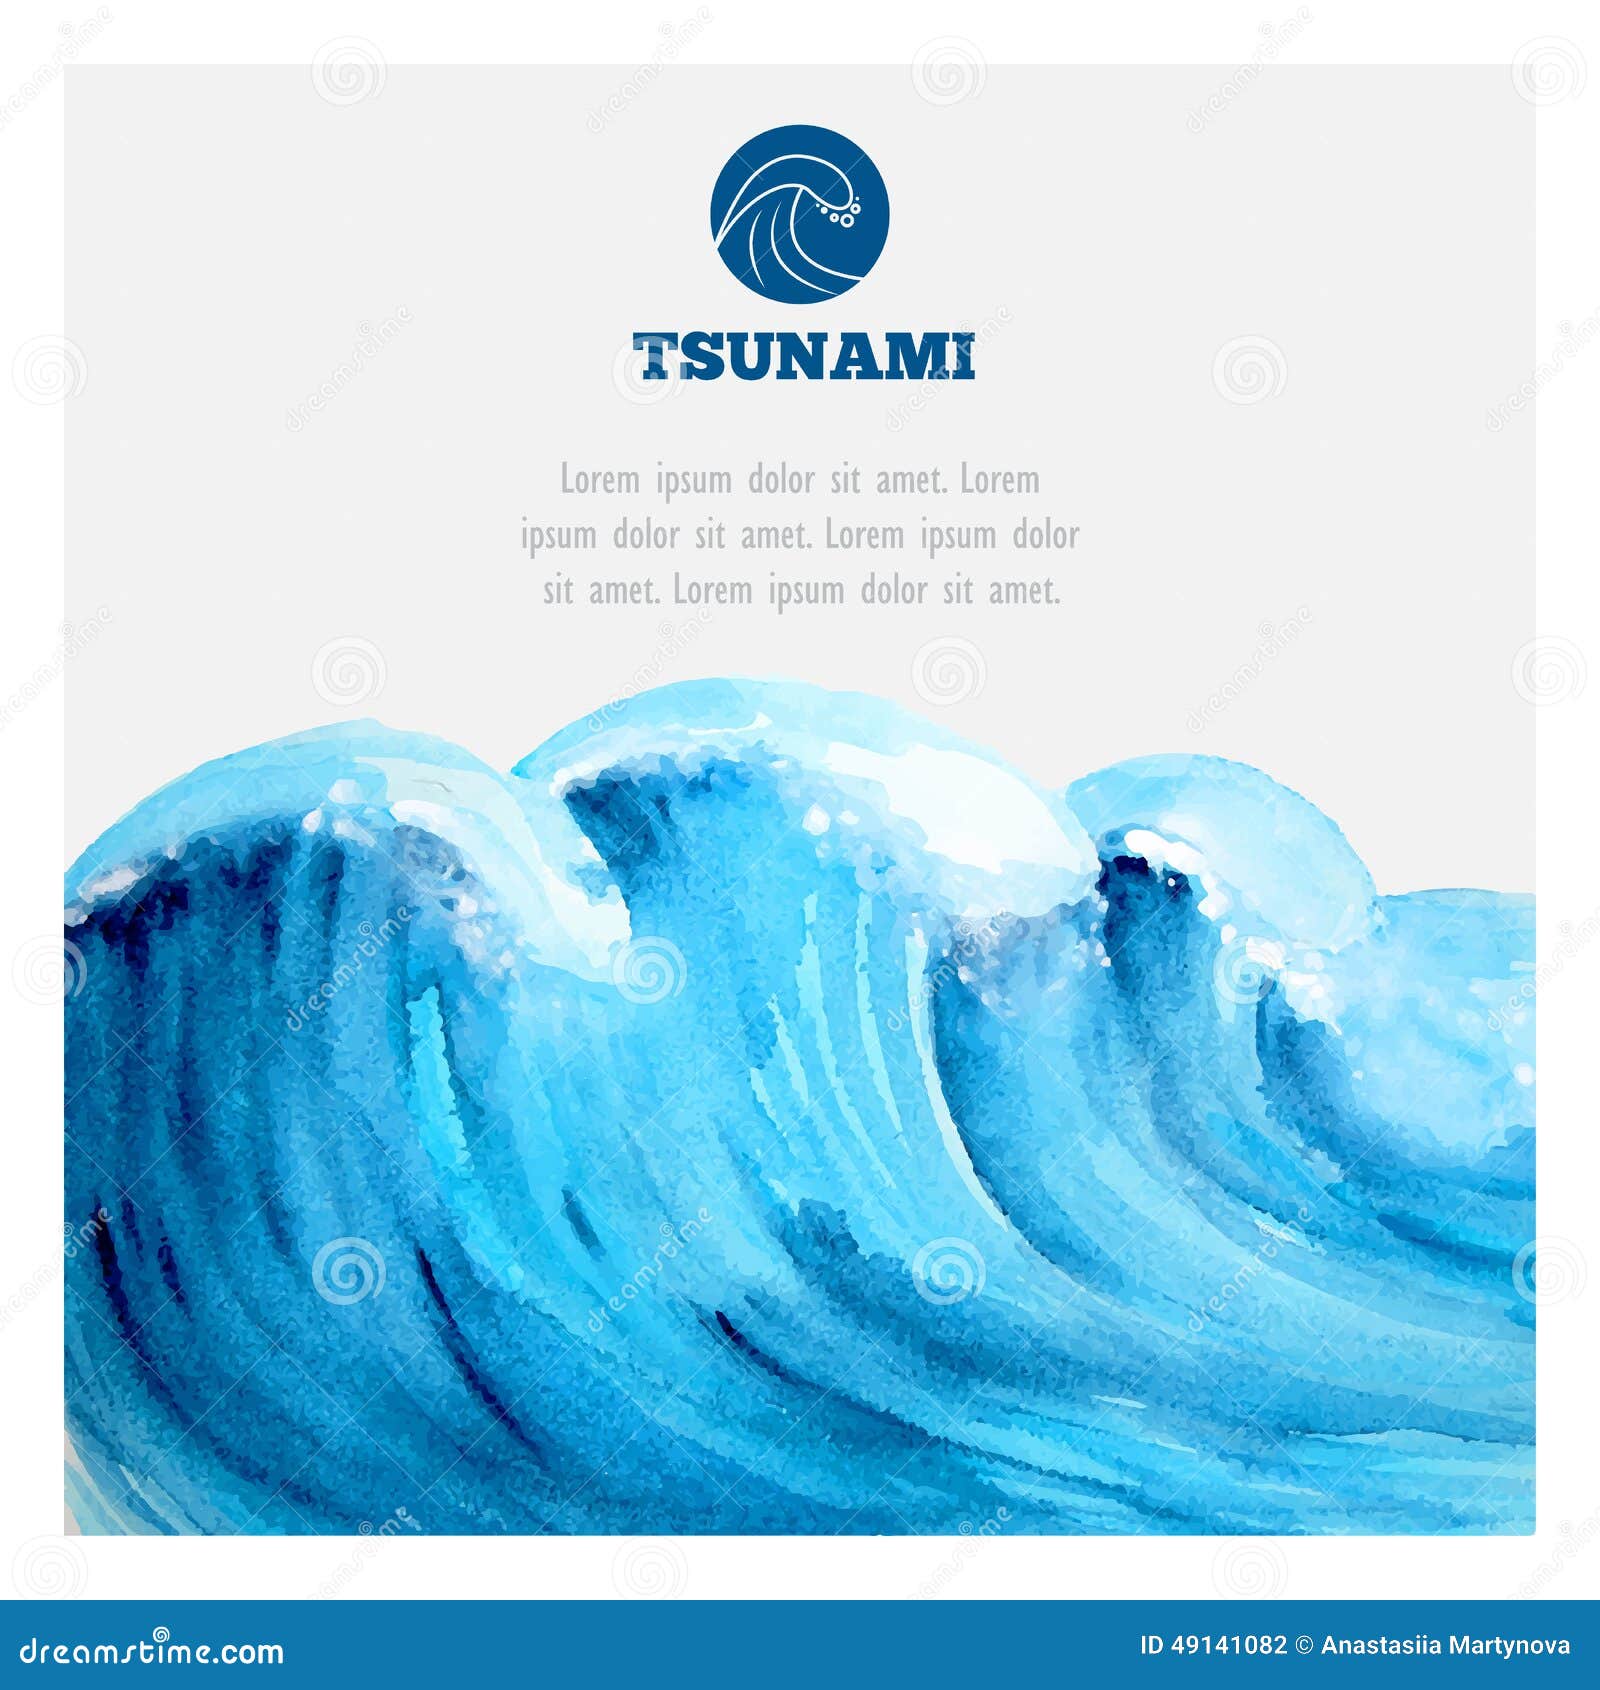 watercolor ocean tsunami waves